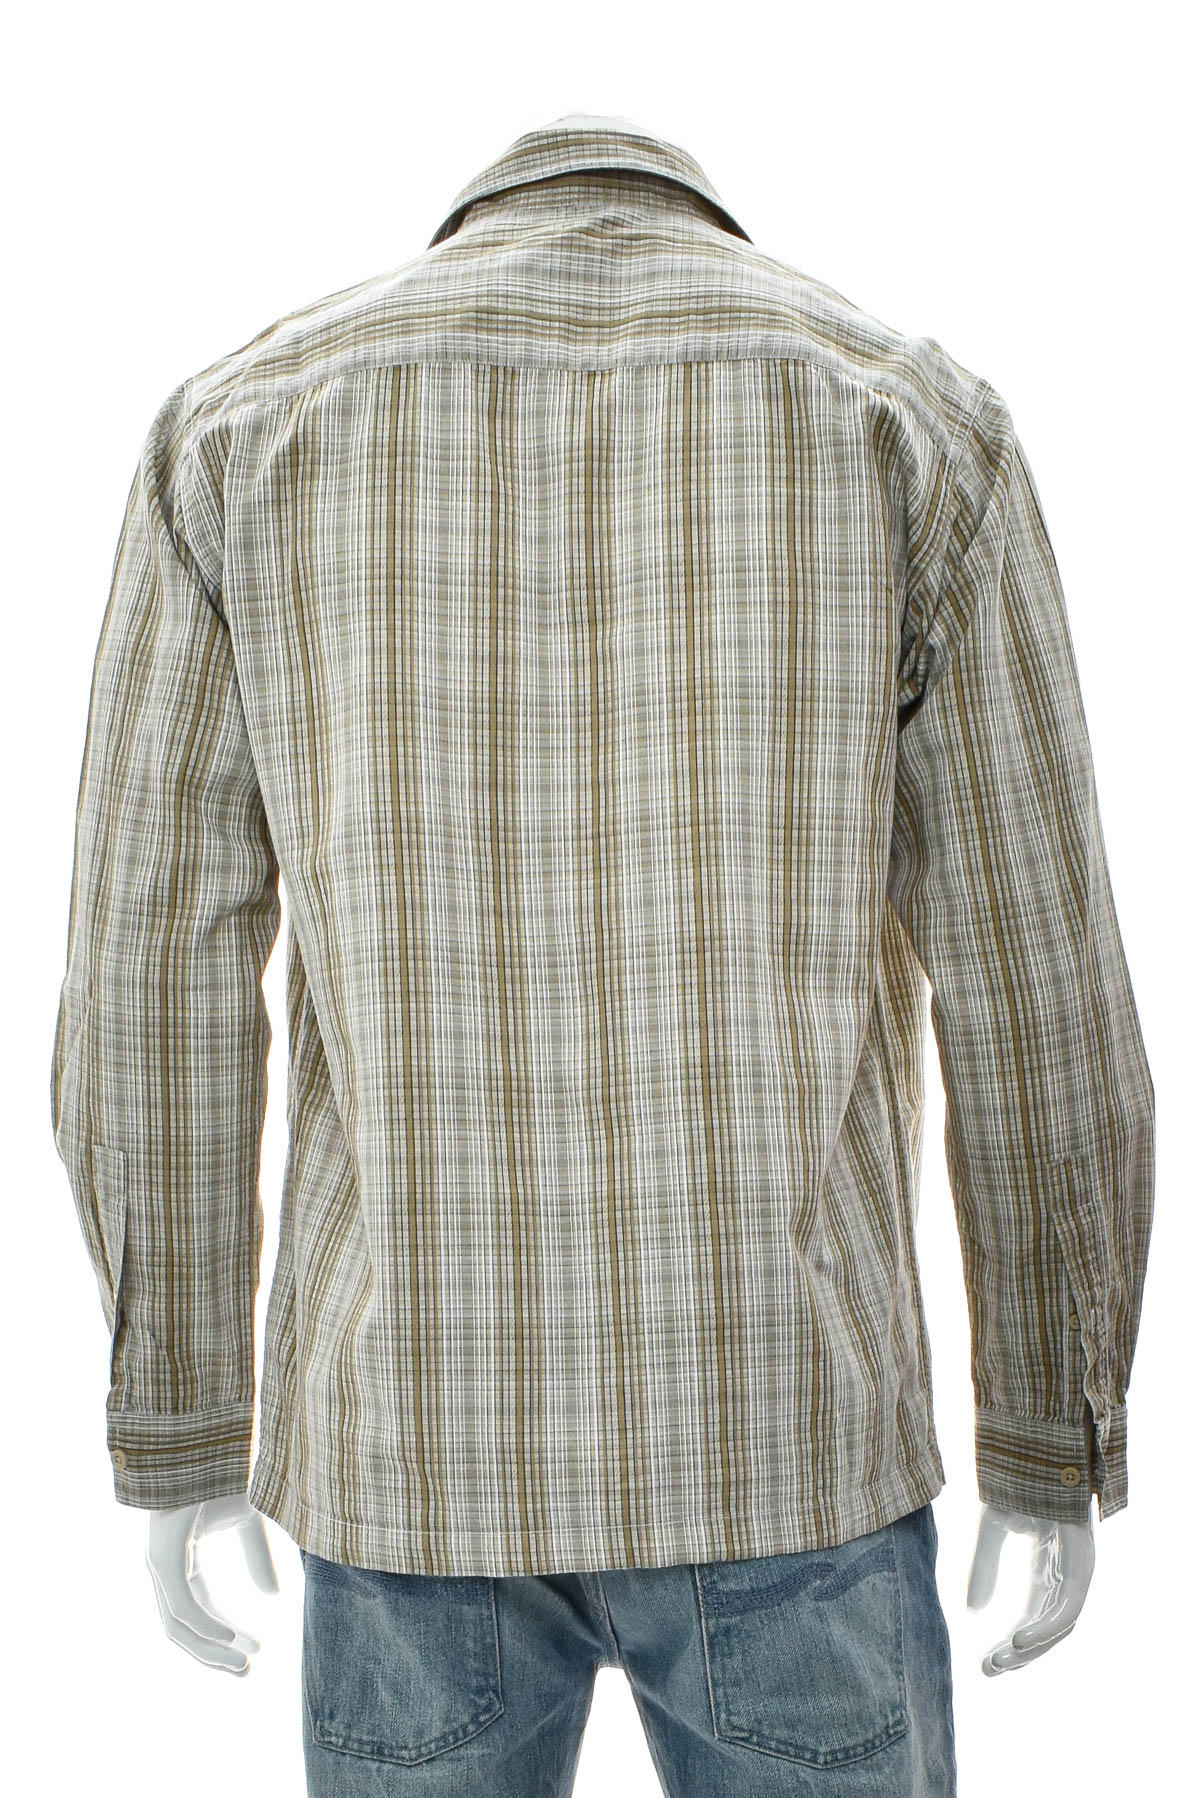 Ανδρικό πουκάμισο - Lee Cooper - 1